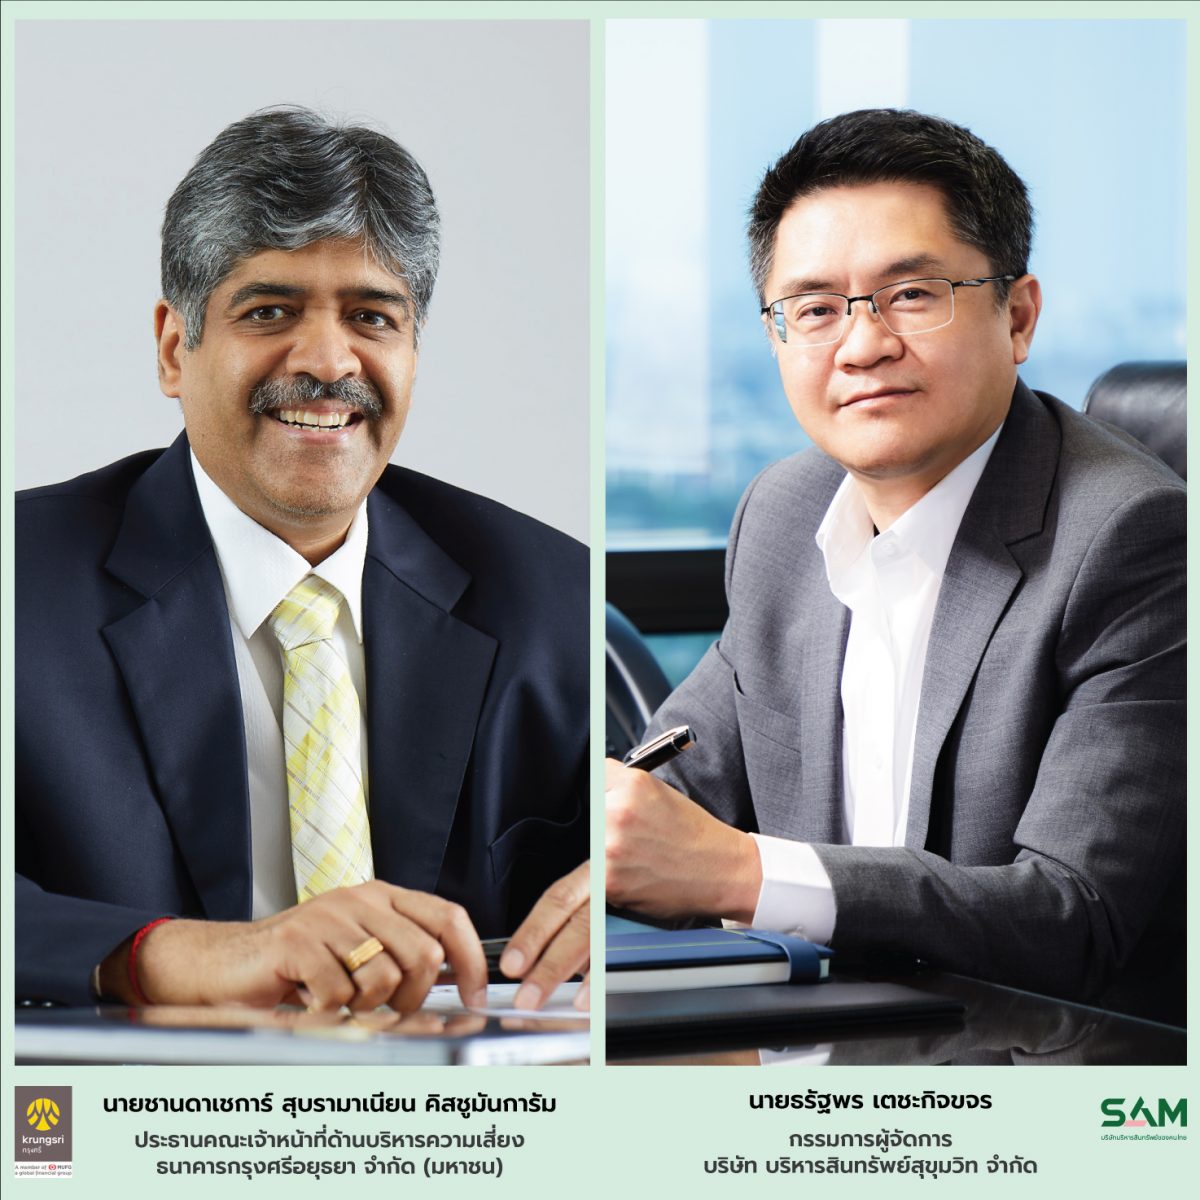 SAM บริษัทบริหารสินทรัพย์ของคนไทย ชนะประมูลซื้อหนี้เสีย BAY กว่า 1,400 ลบ.